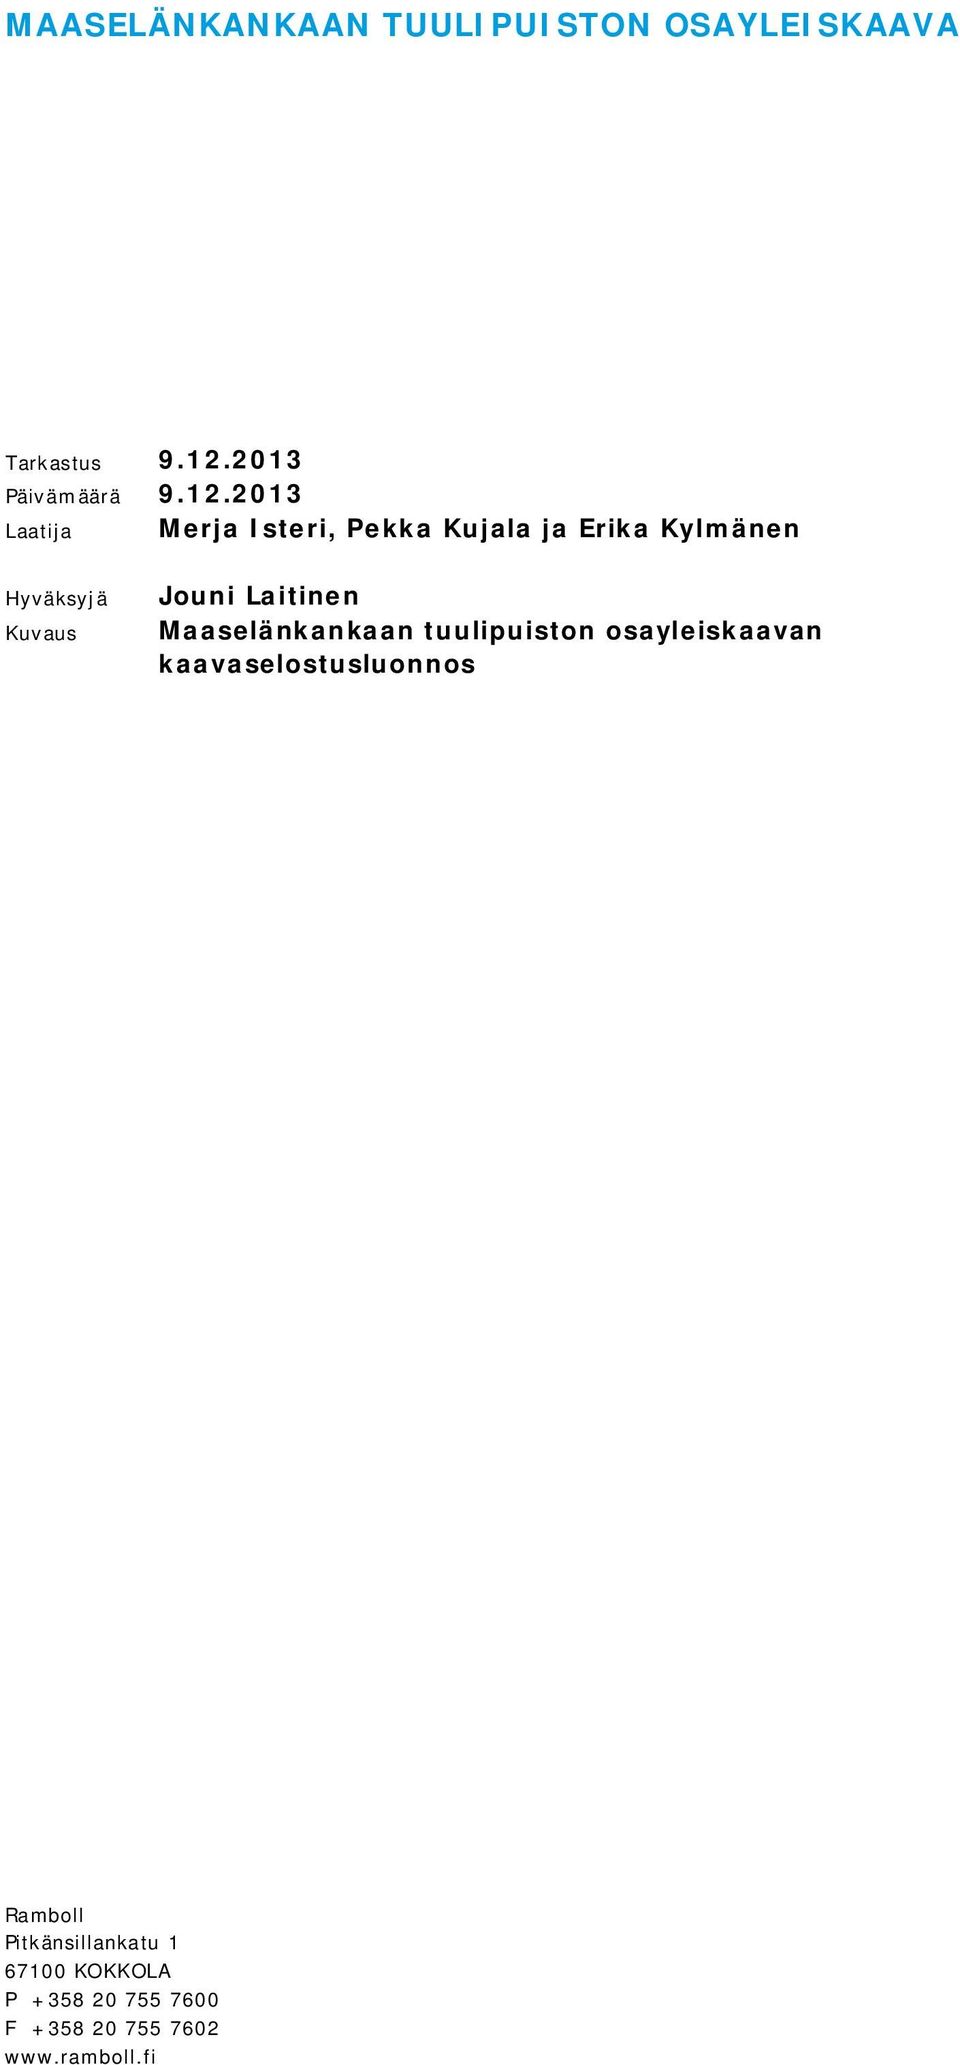 2013 Laatija Merja Isteri, Pekka Kujala ja Erika Kylmänen Hyväksyjä Kuvaus Jouni